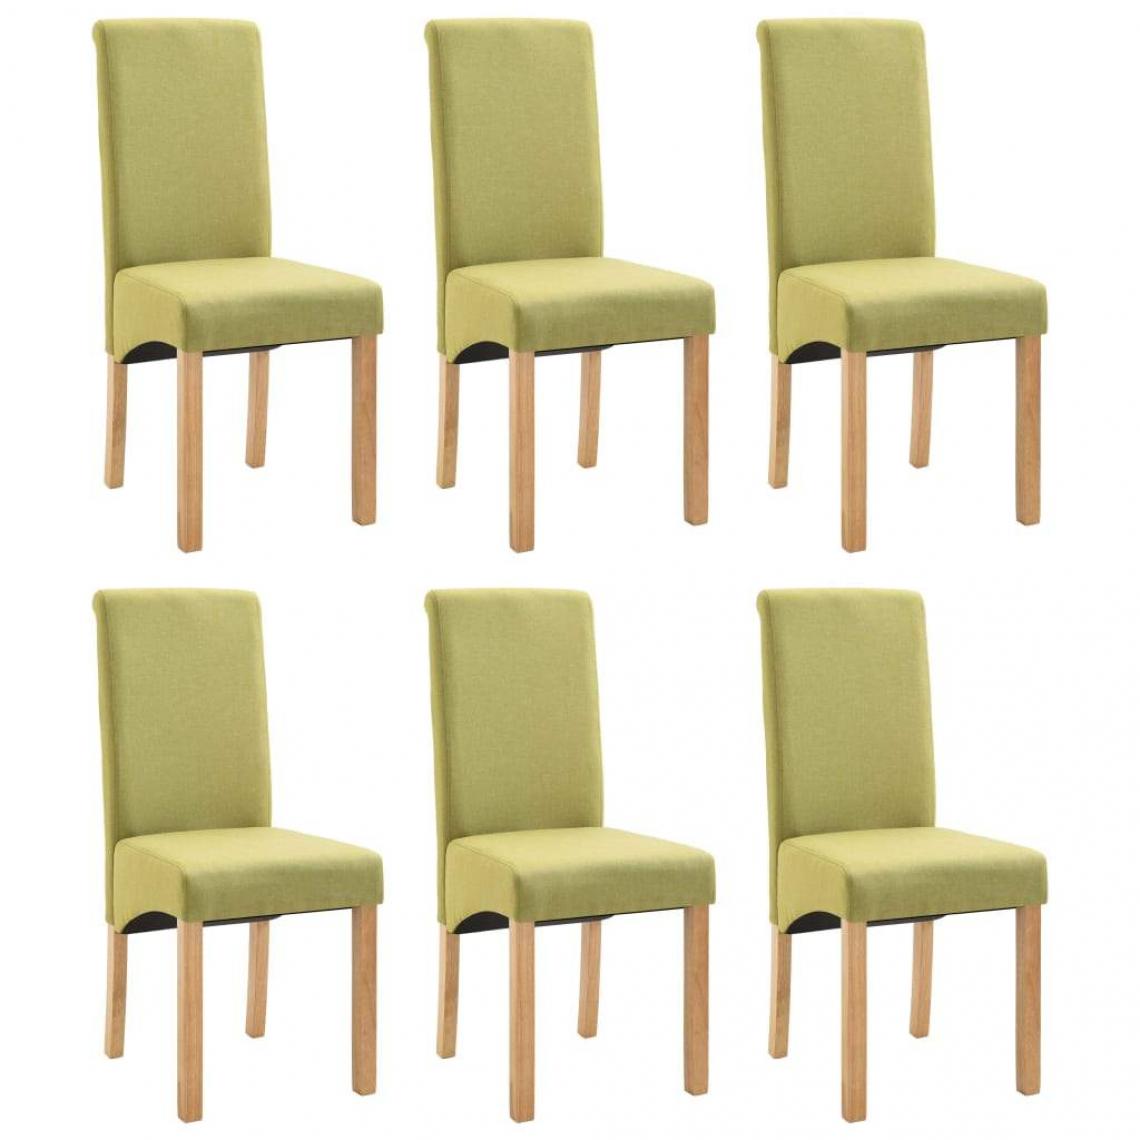 Decoshop26 - Lot de 6 chaises de salle à manger cuisine design moderne tissu vert CDS022906 - Chaises